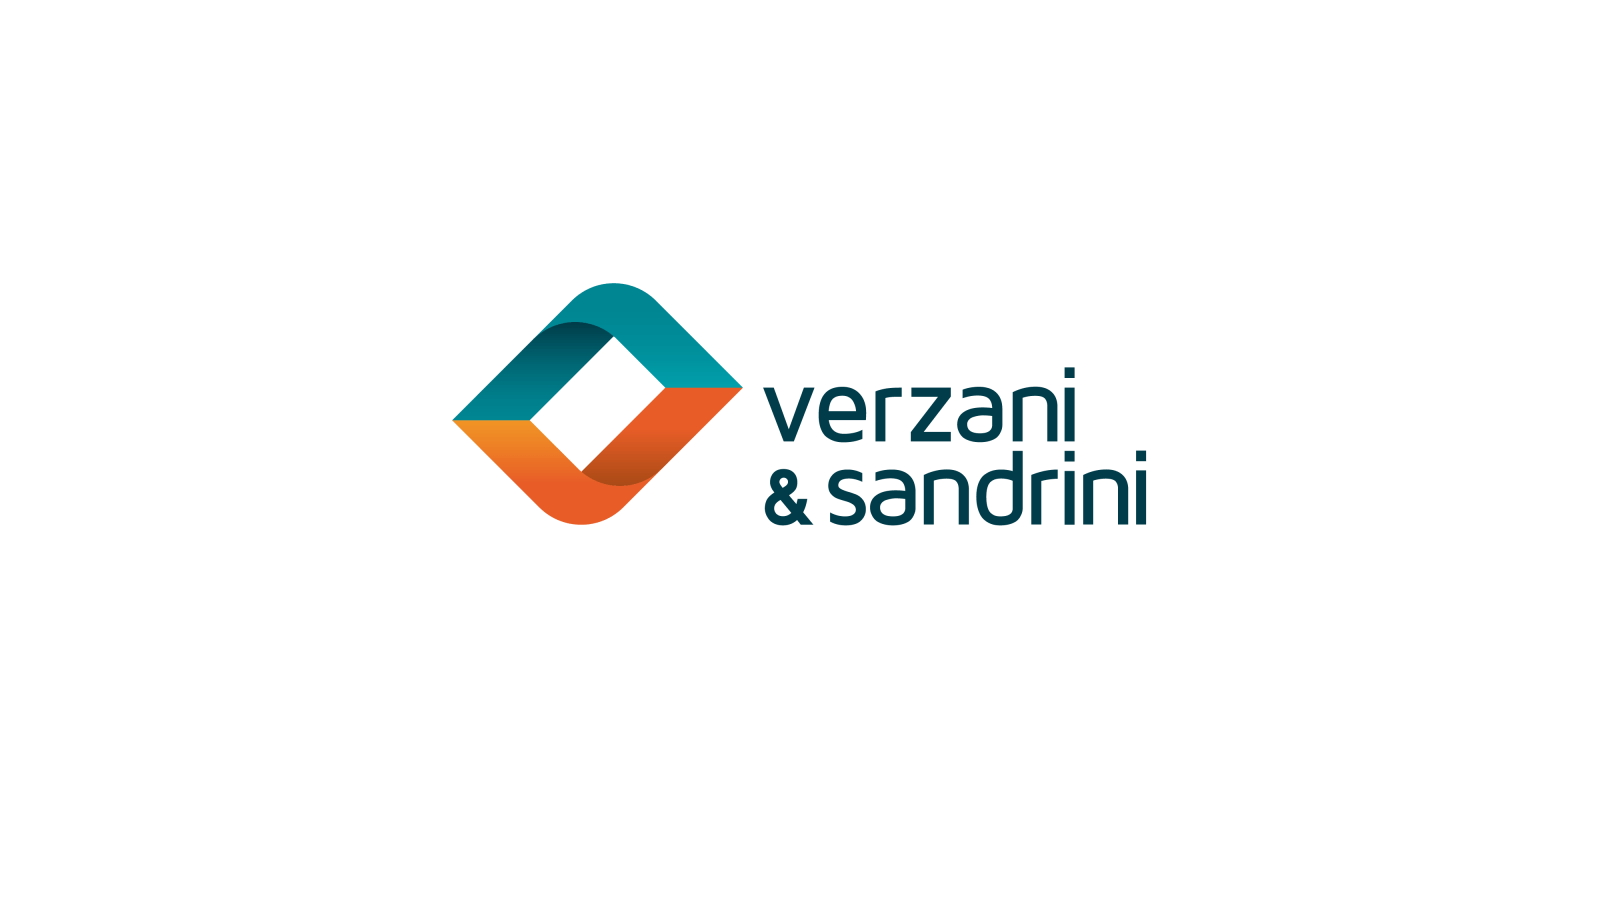 Limpeza e Conservação - Verzani & Sandrini